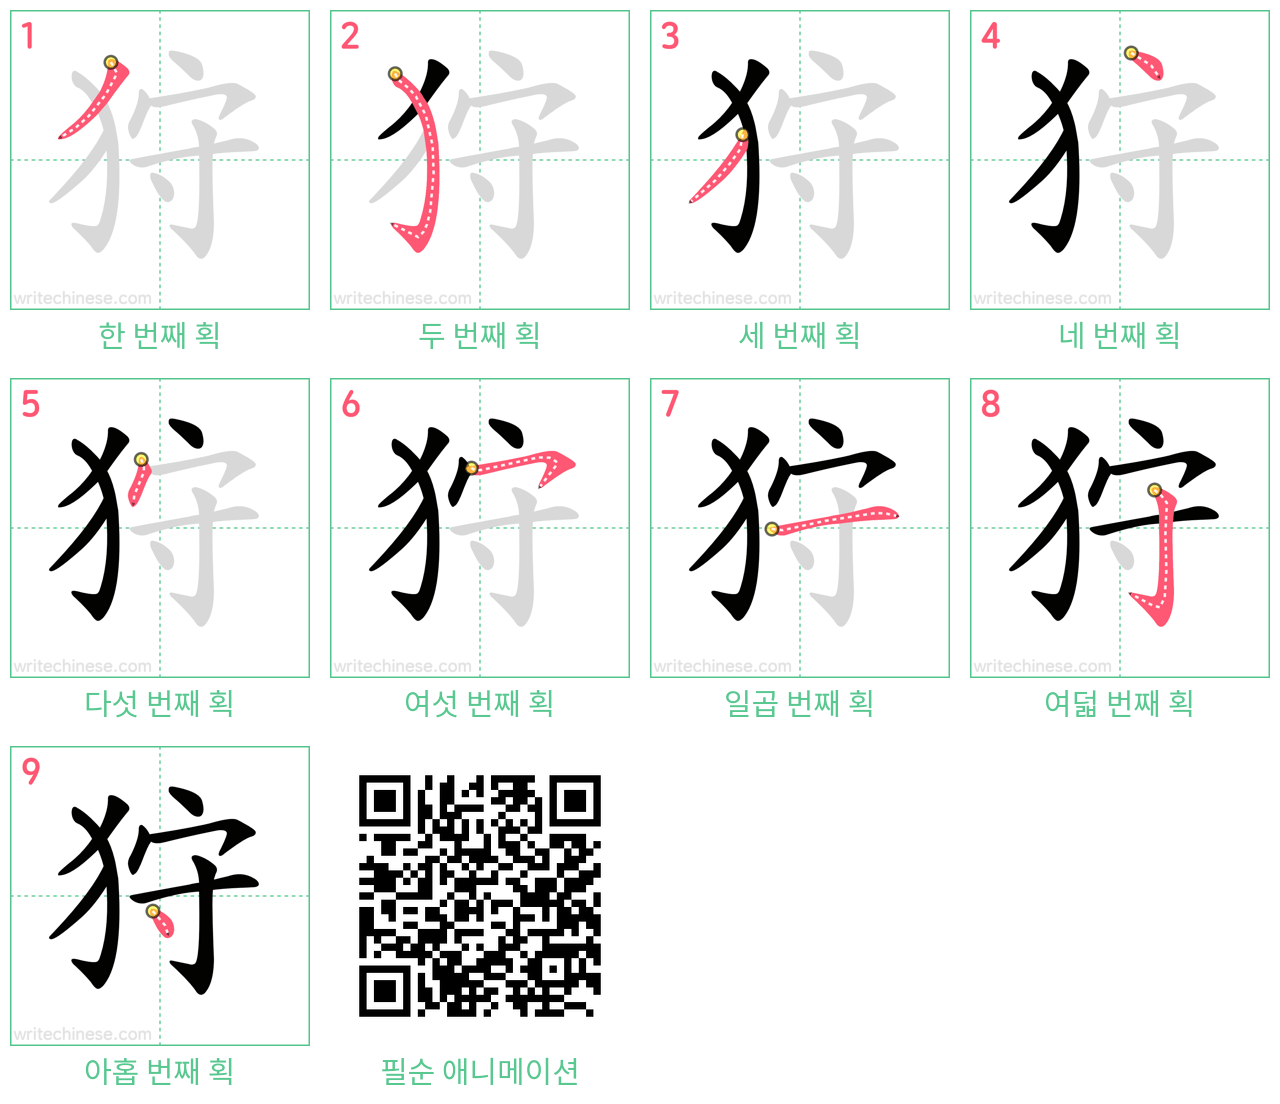 狩 step-by-step stroke order diagrams